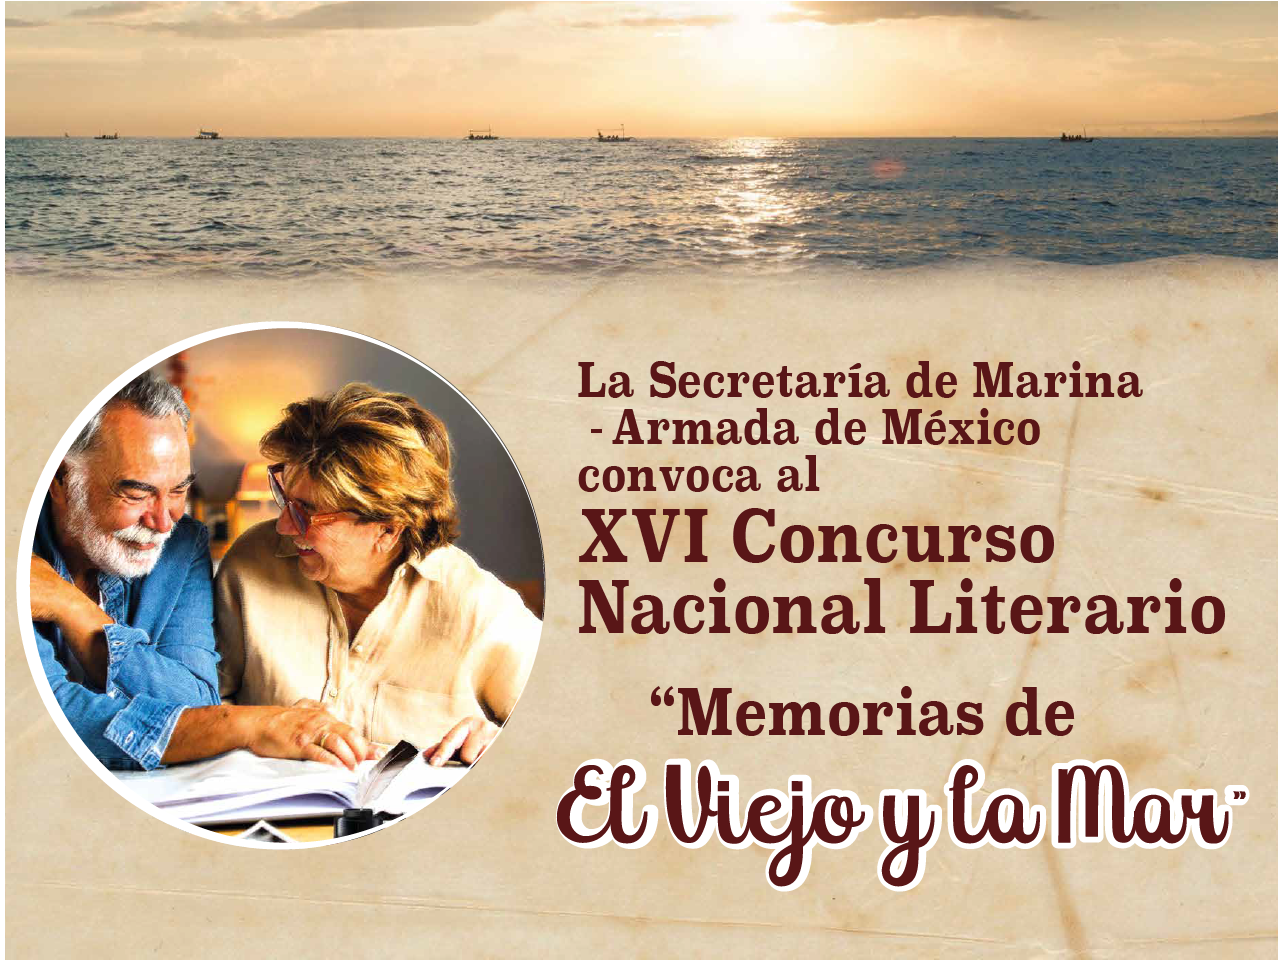 XVI Concurso Nacional Literario “Memorias de El Viejo y la Mar”